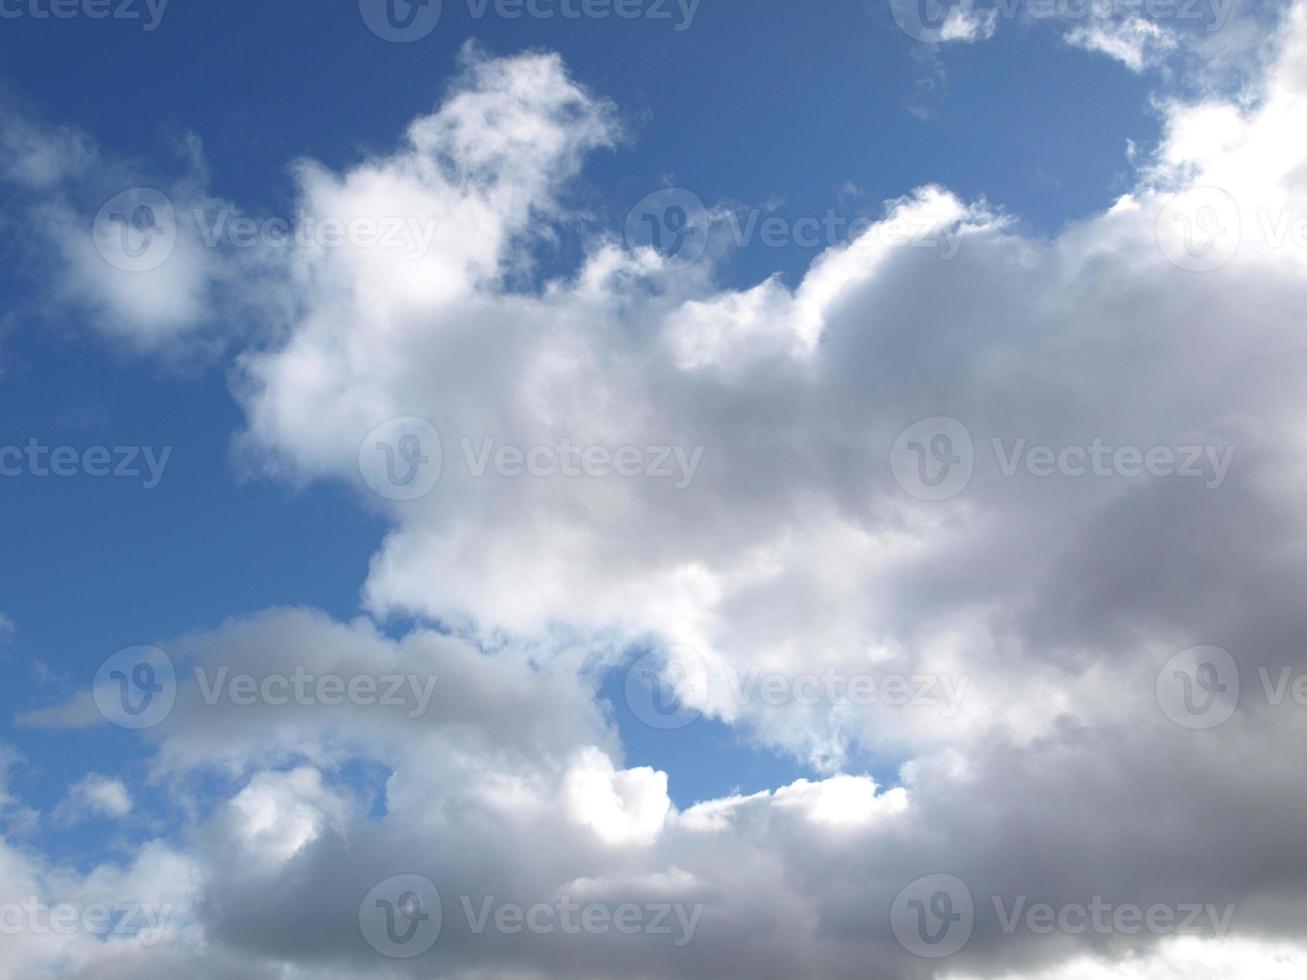 céu azul com nuvens foto